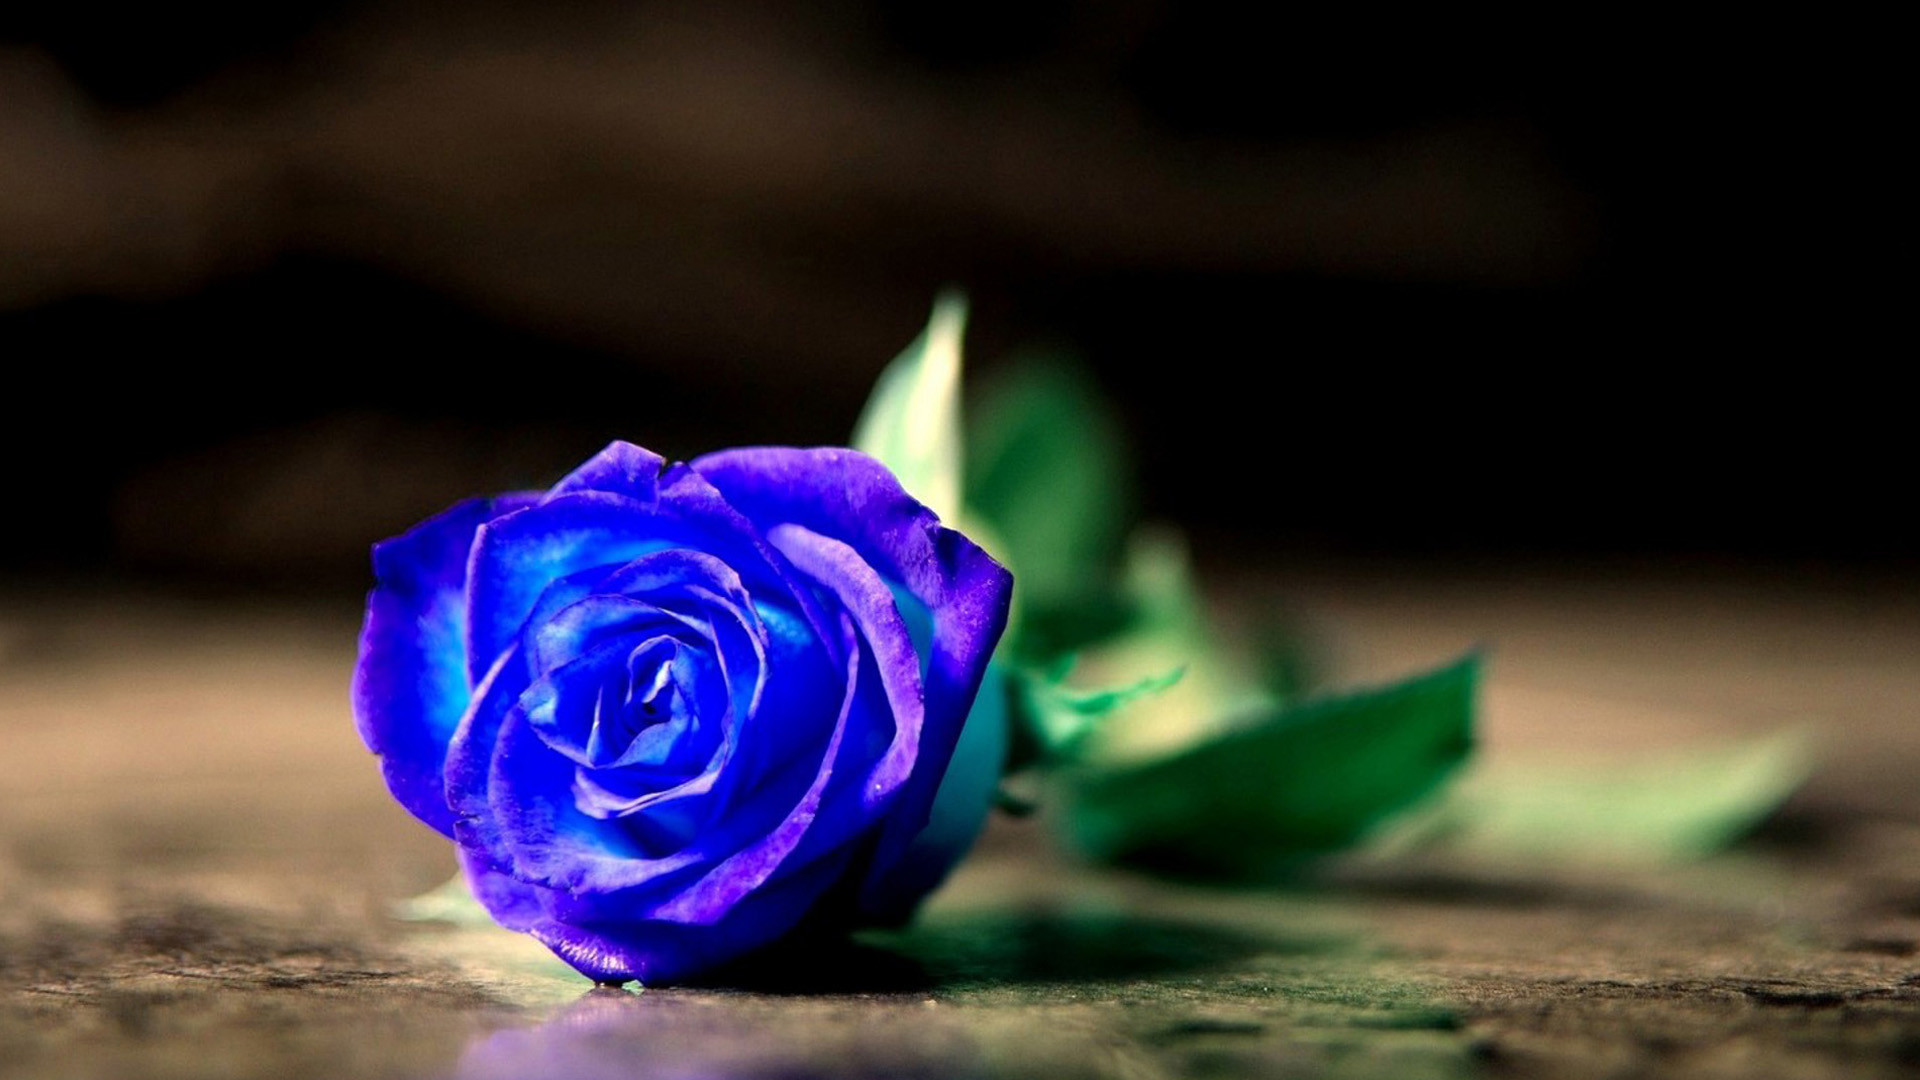 蓝色水晶玫瑰花 - 全部作品 - 素材集市